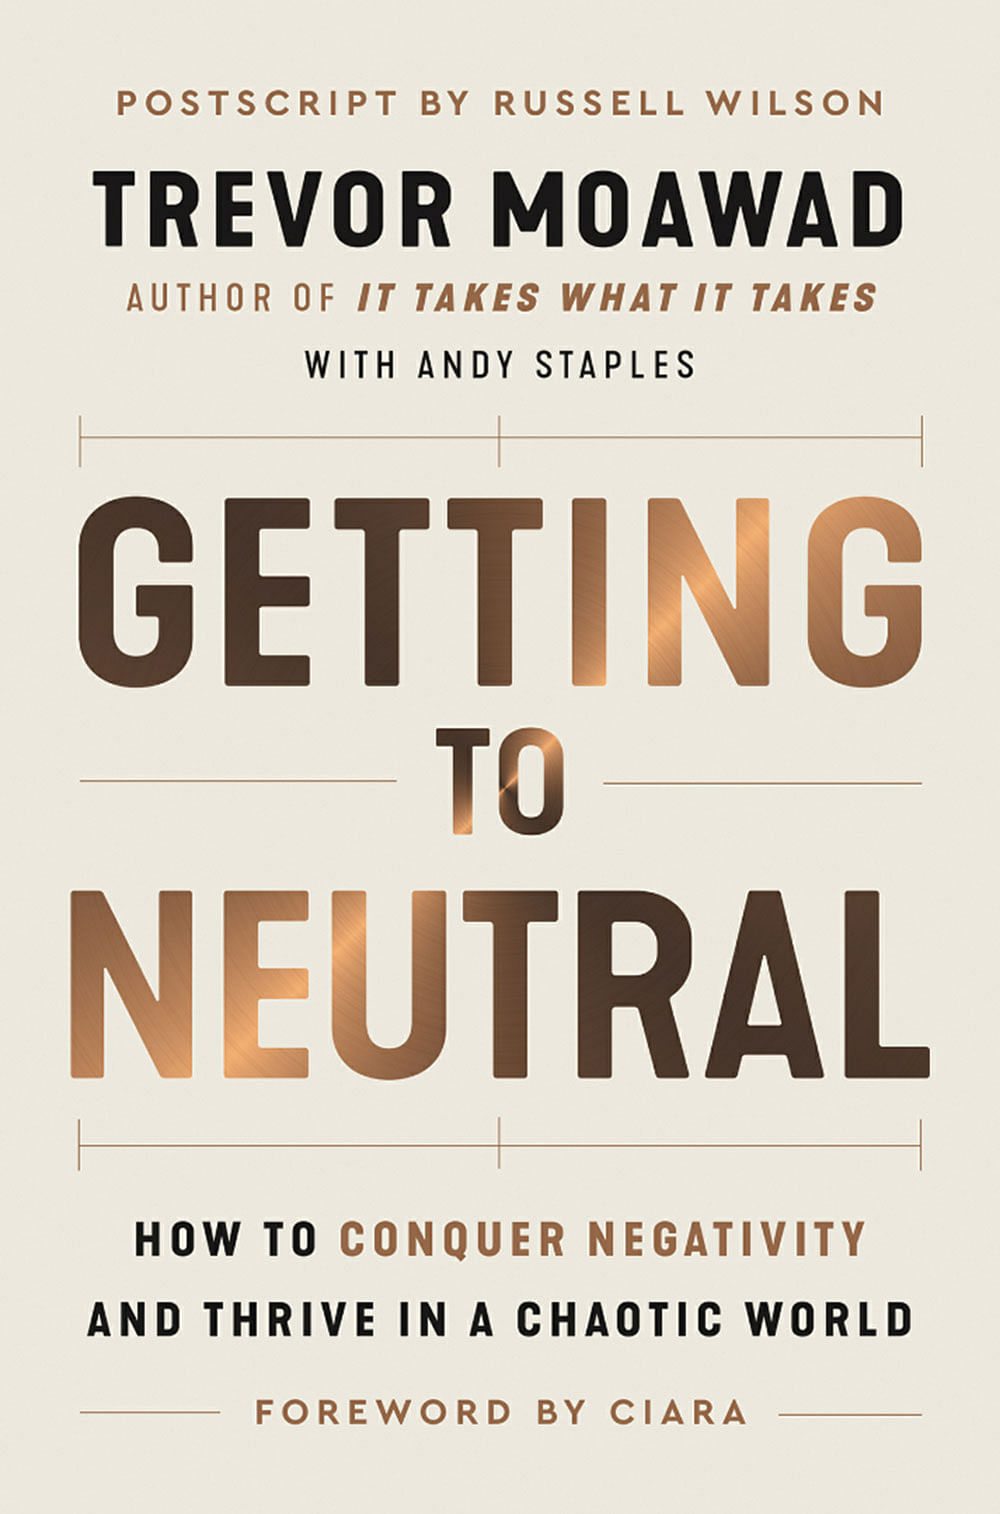 புத்தகத்தின் பெயர்:
Getting to Neutral 
ஆசிரியர்கள்:
Trevor Moawad & Andy Staples
பதிப்பாளர்:
HarperOne; HarperCollins